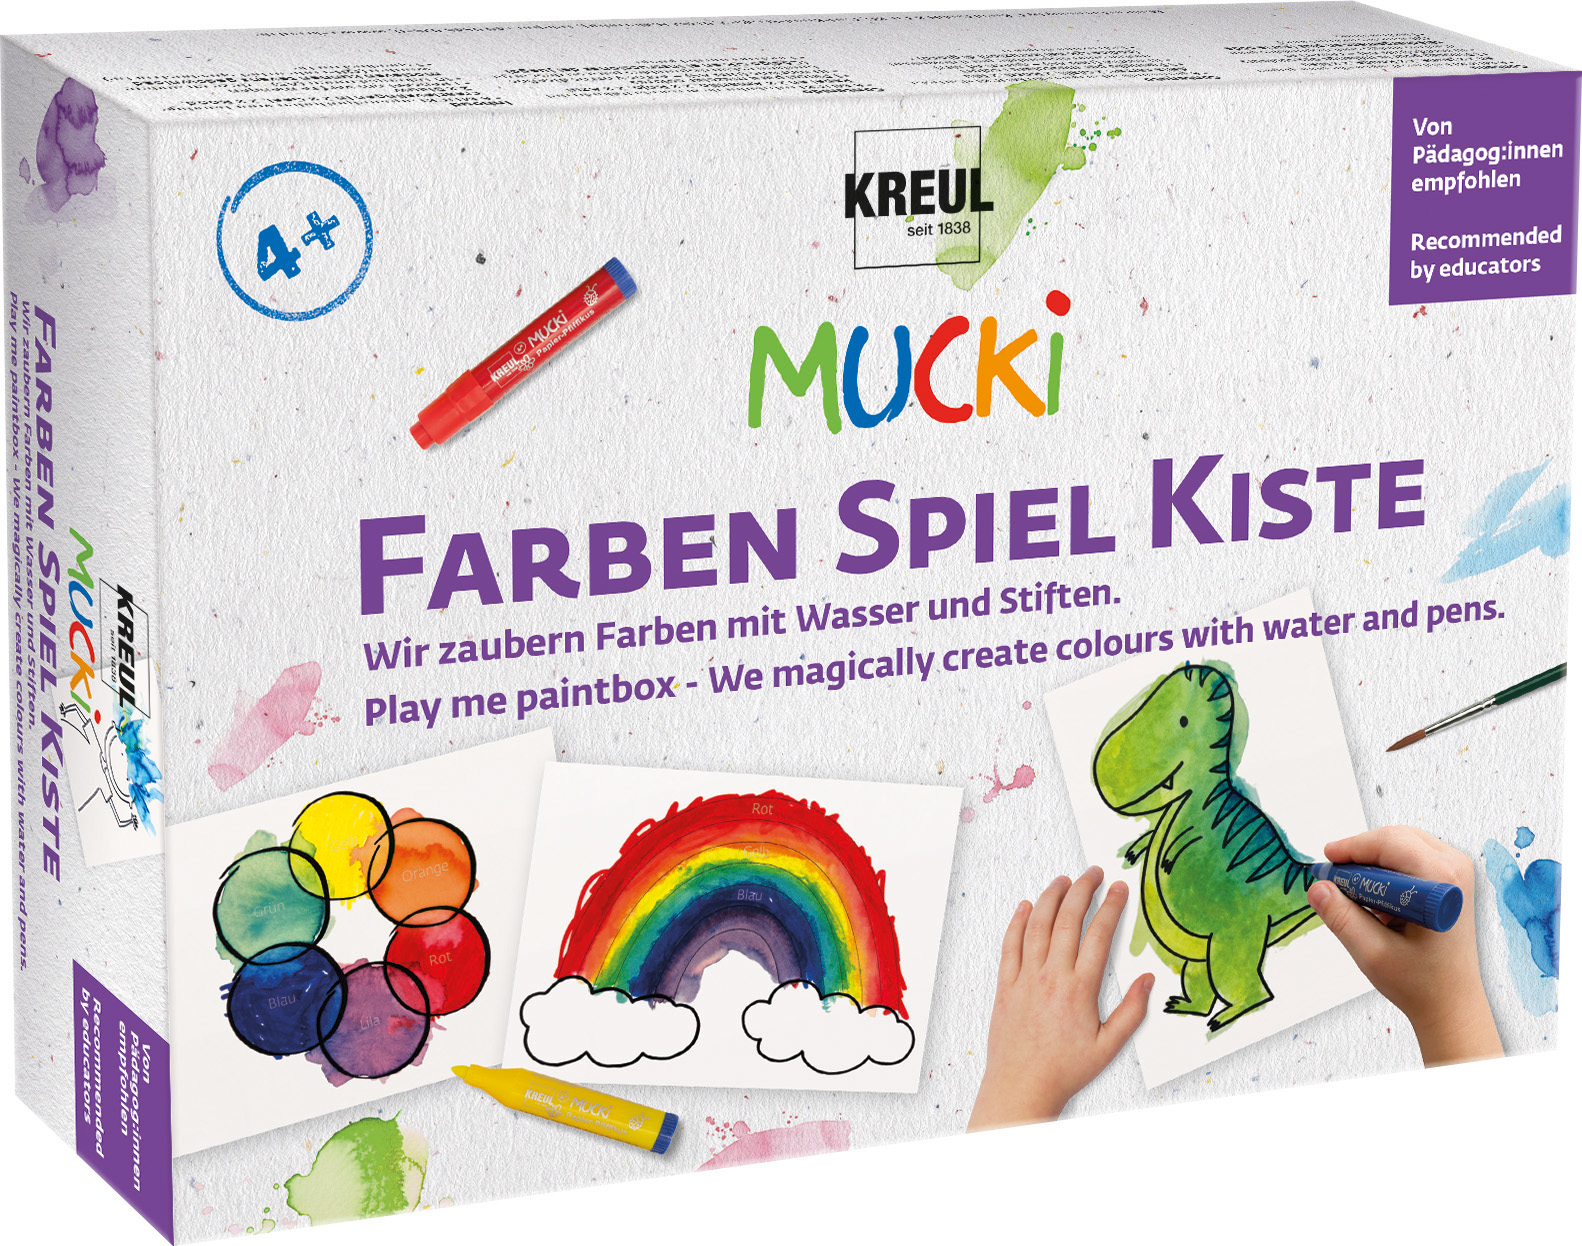 KREUL Mucki scatola dei giochi a colori facciamo magie con colori e dita prezzo netto